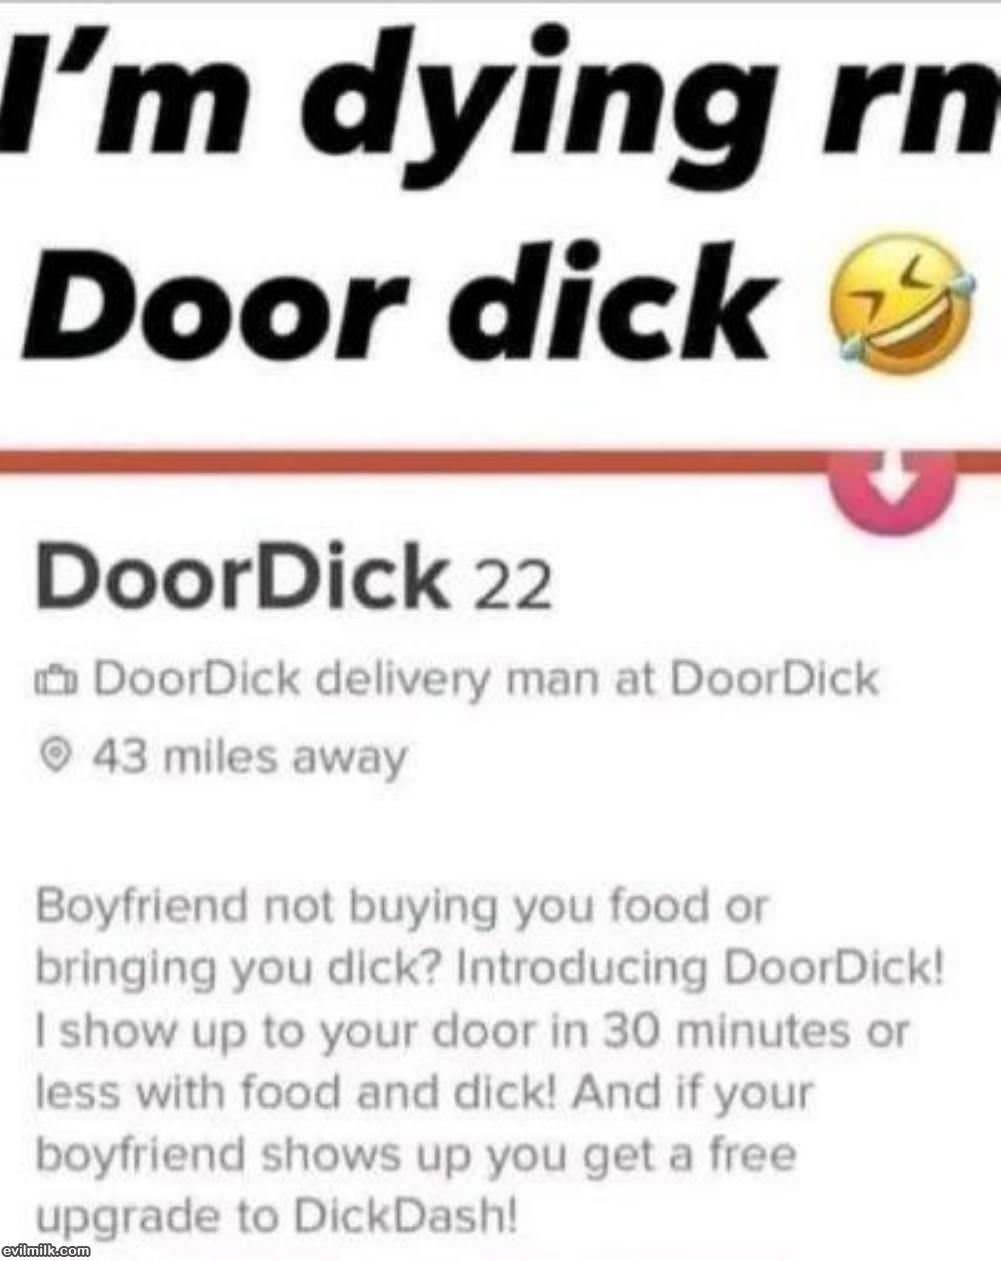 Doordick